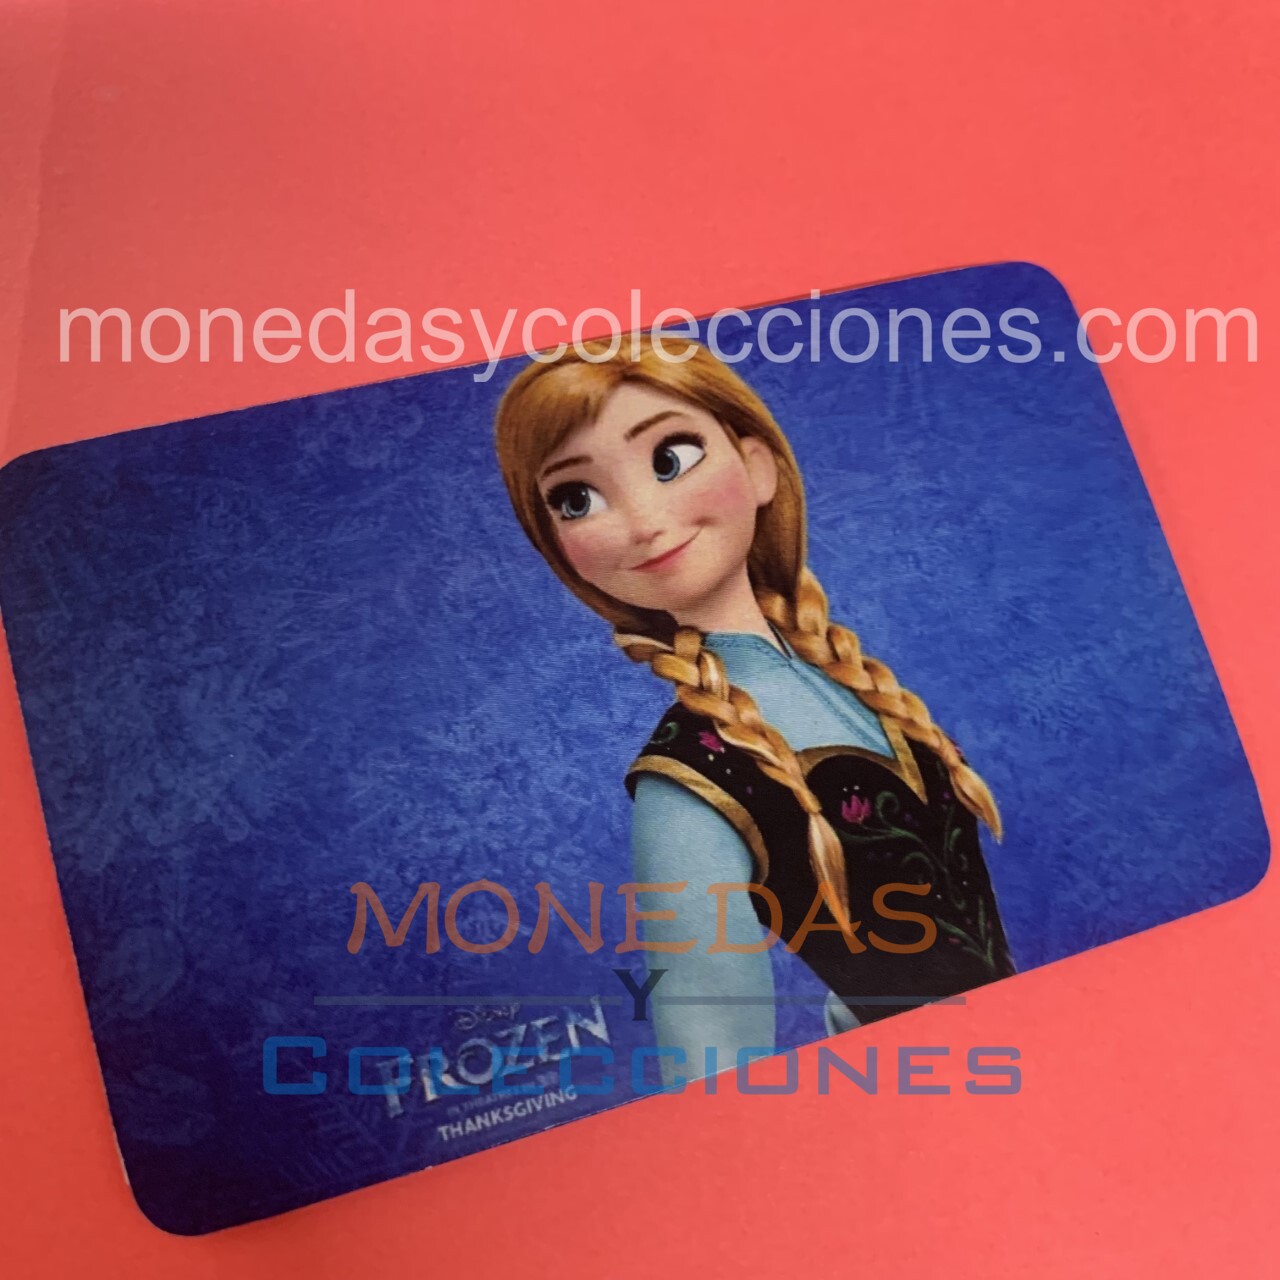 Sticker para tarjetas 5 Princesas Disney – Monedas Y Coleccionas